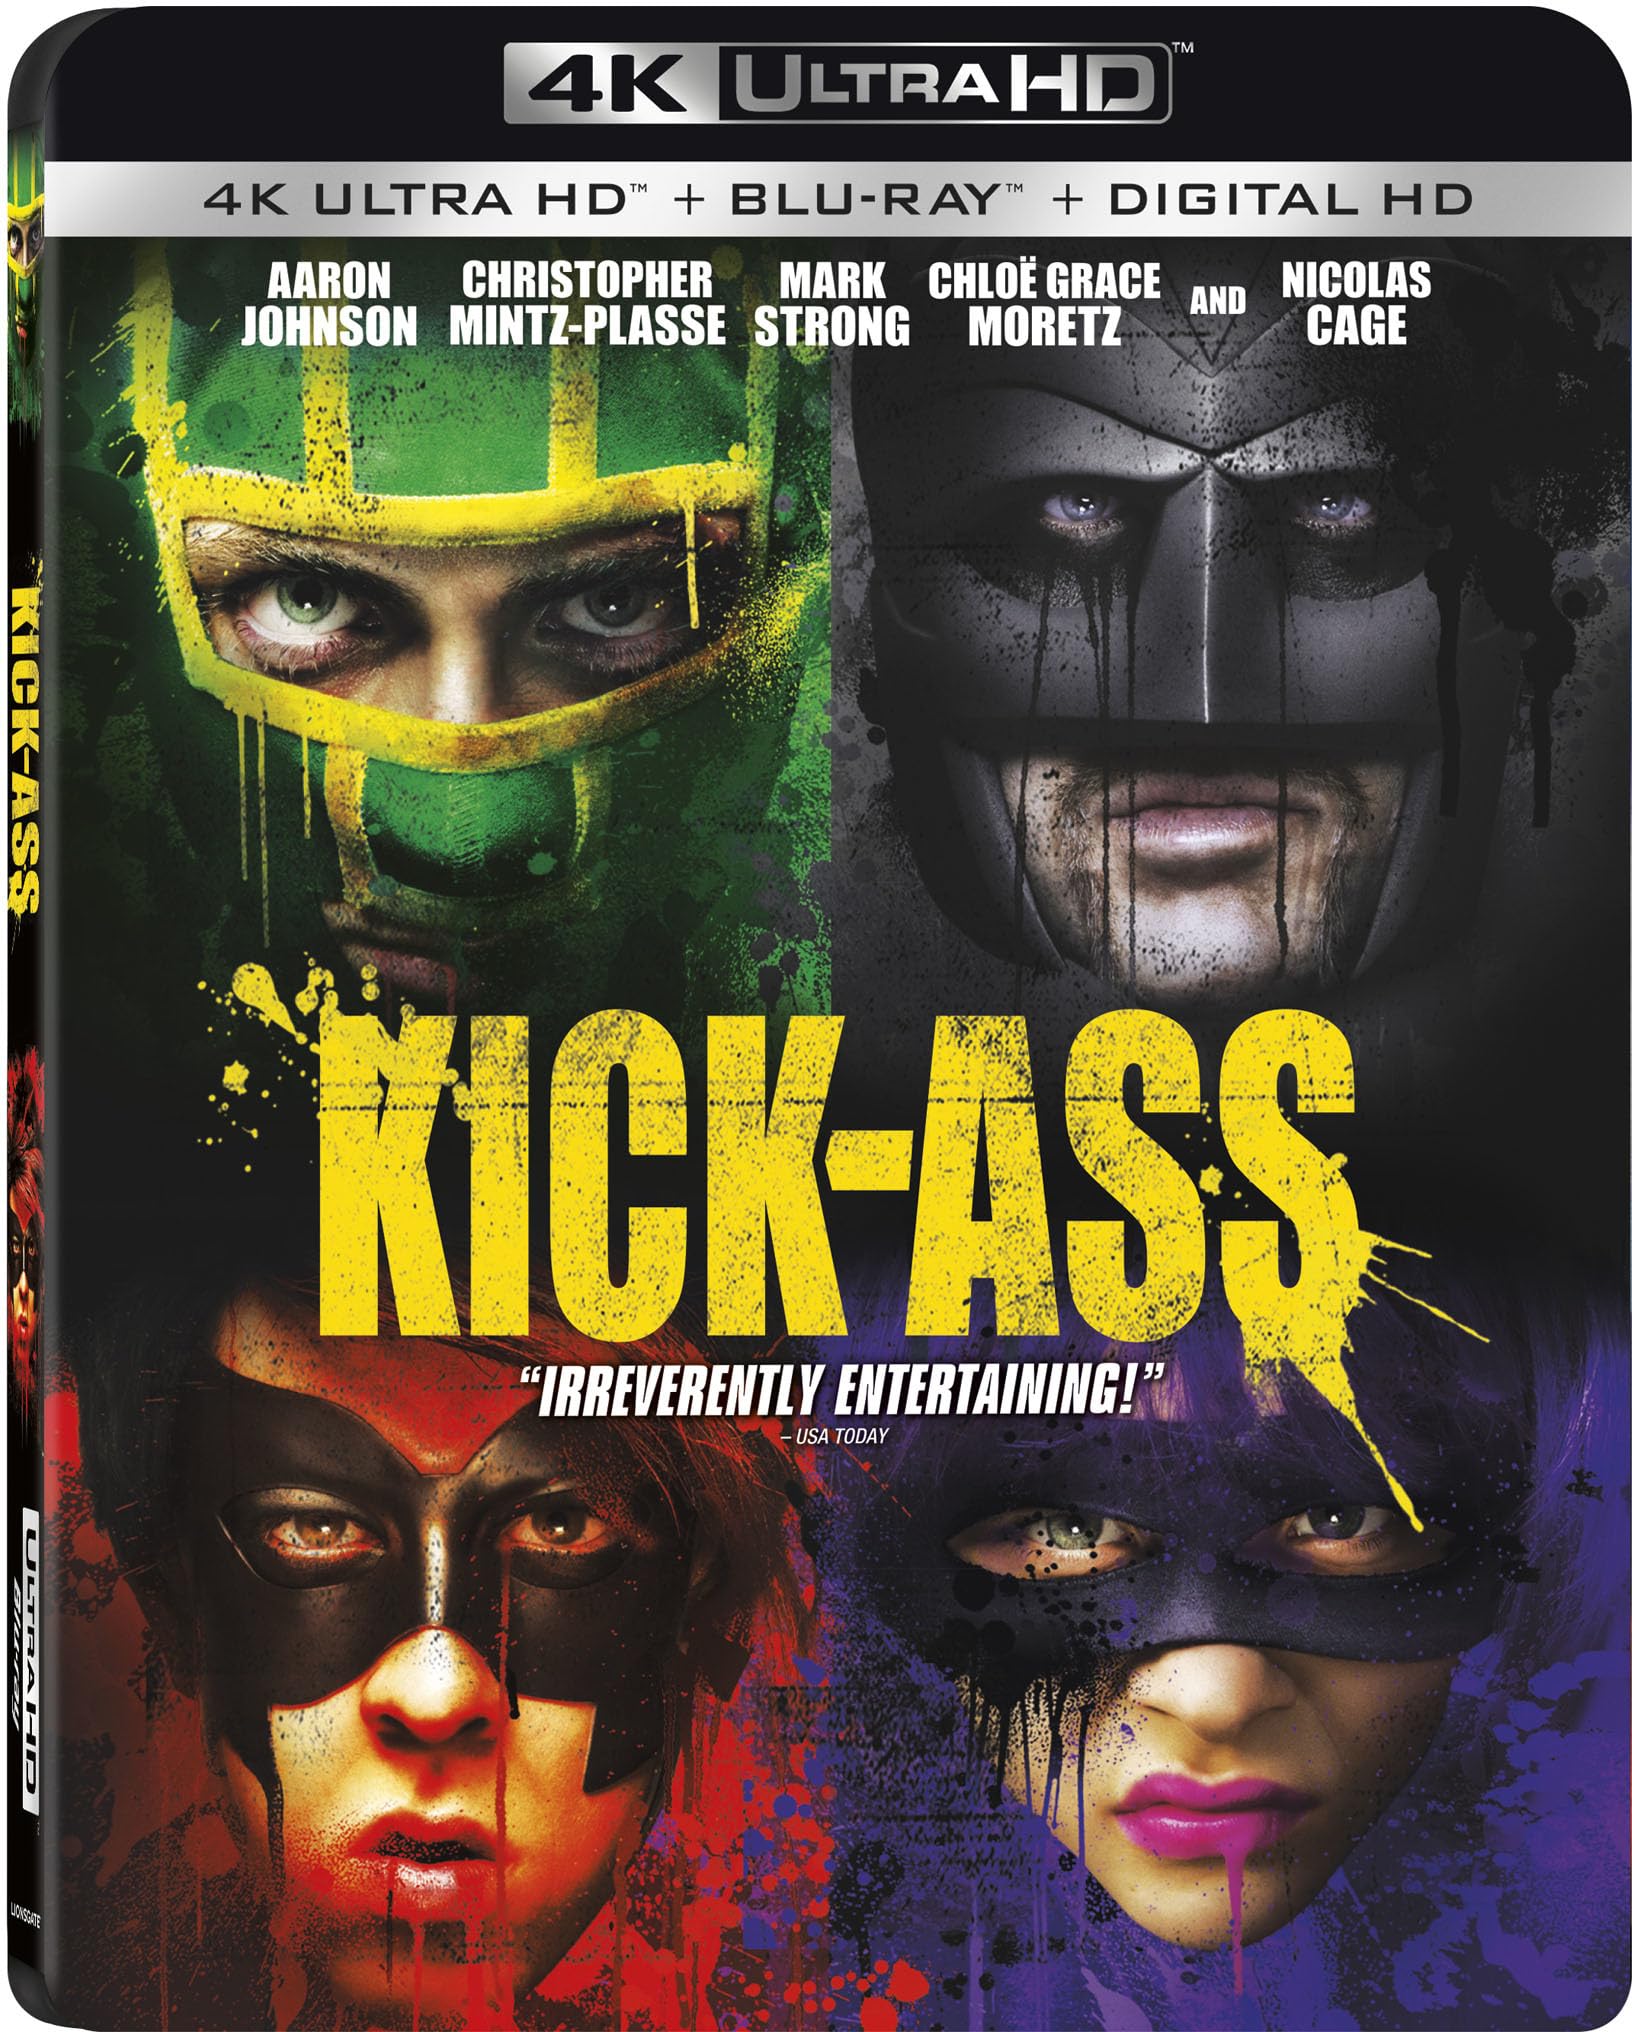 Kick-Ass 4K Ultra HD [4K + Blu-ray + Digital] [4K UHD]